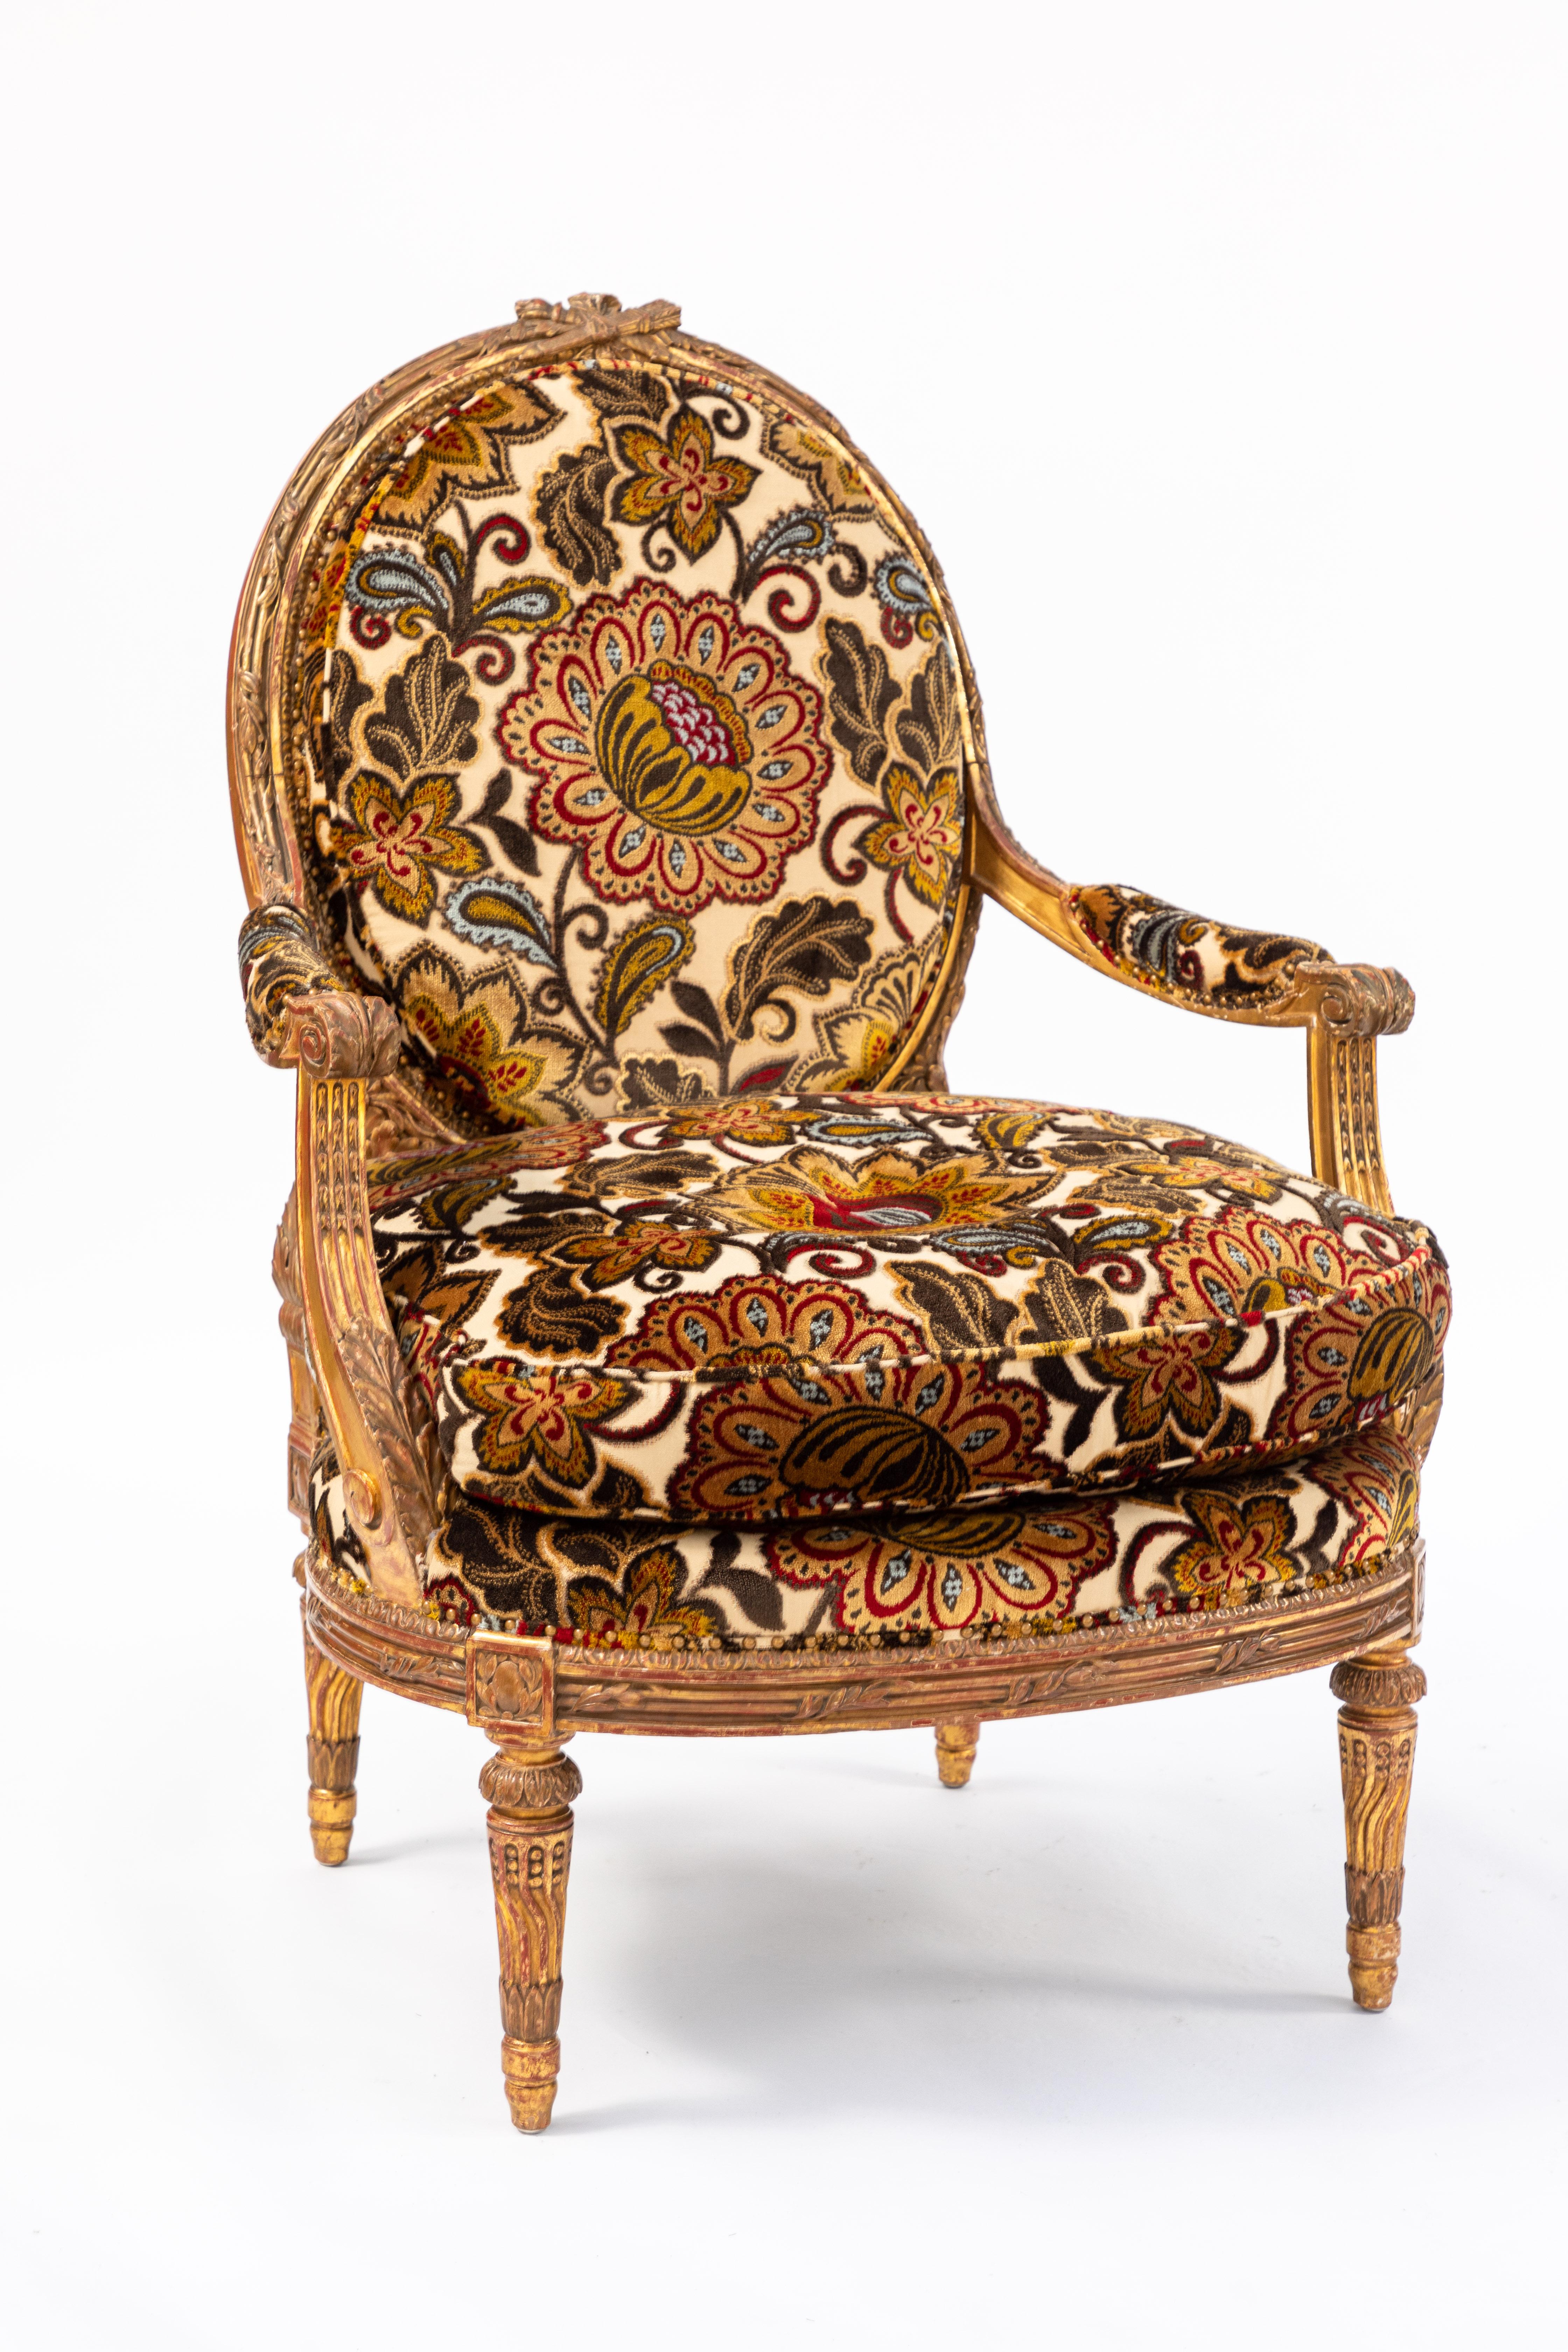 Paire de fauteuils en bois doré sculpté français du 19ème siècle avec tissu floral en velours coupé nouvellement tapissé.